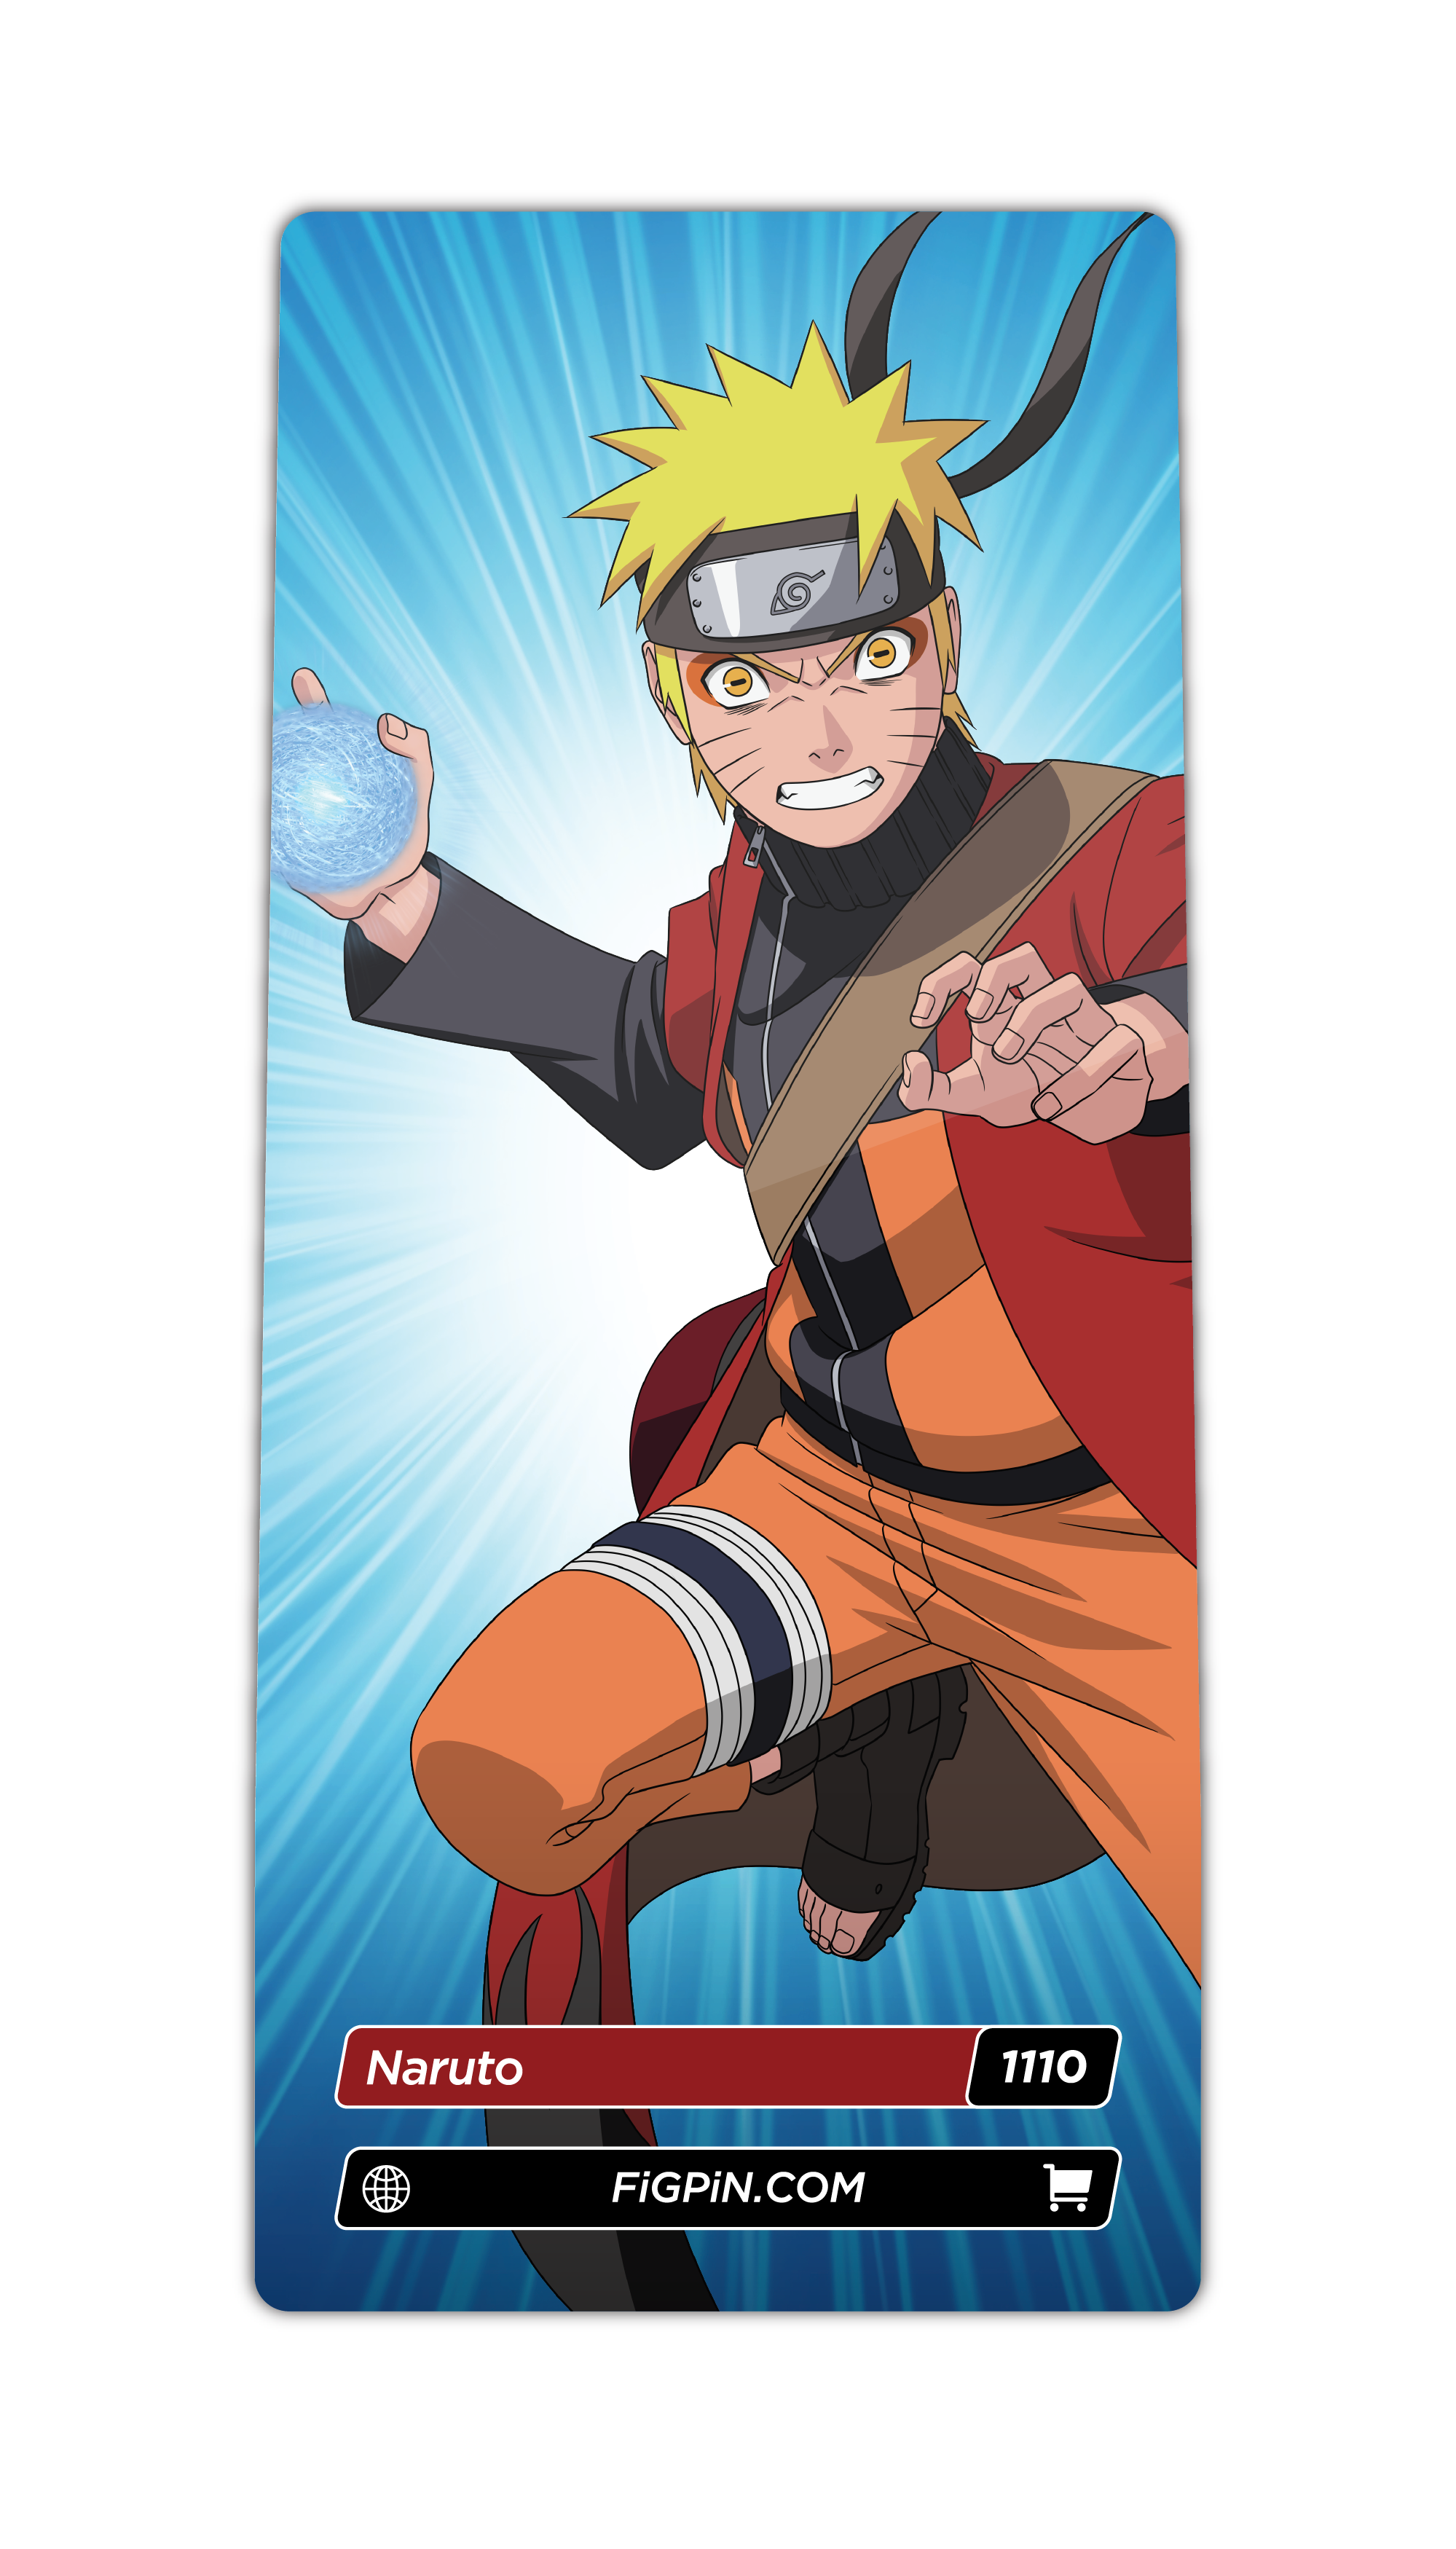 Naruto (1110)